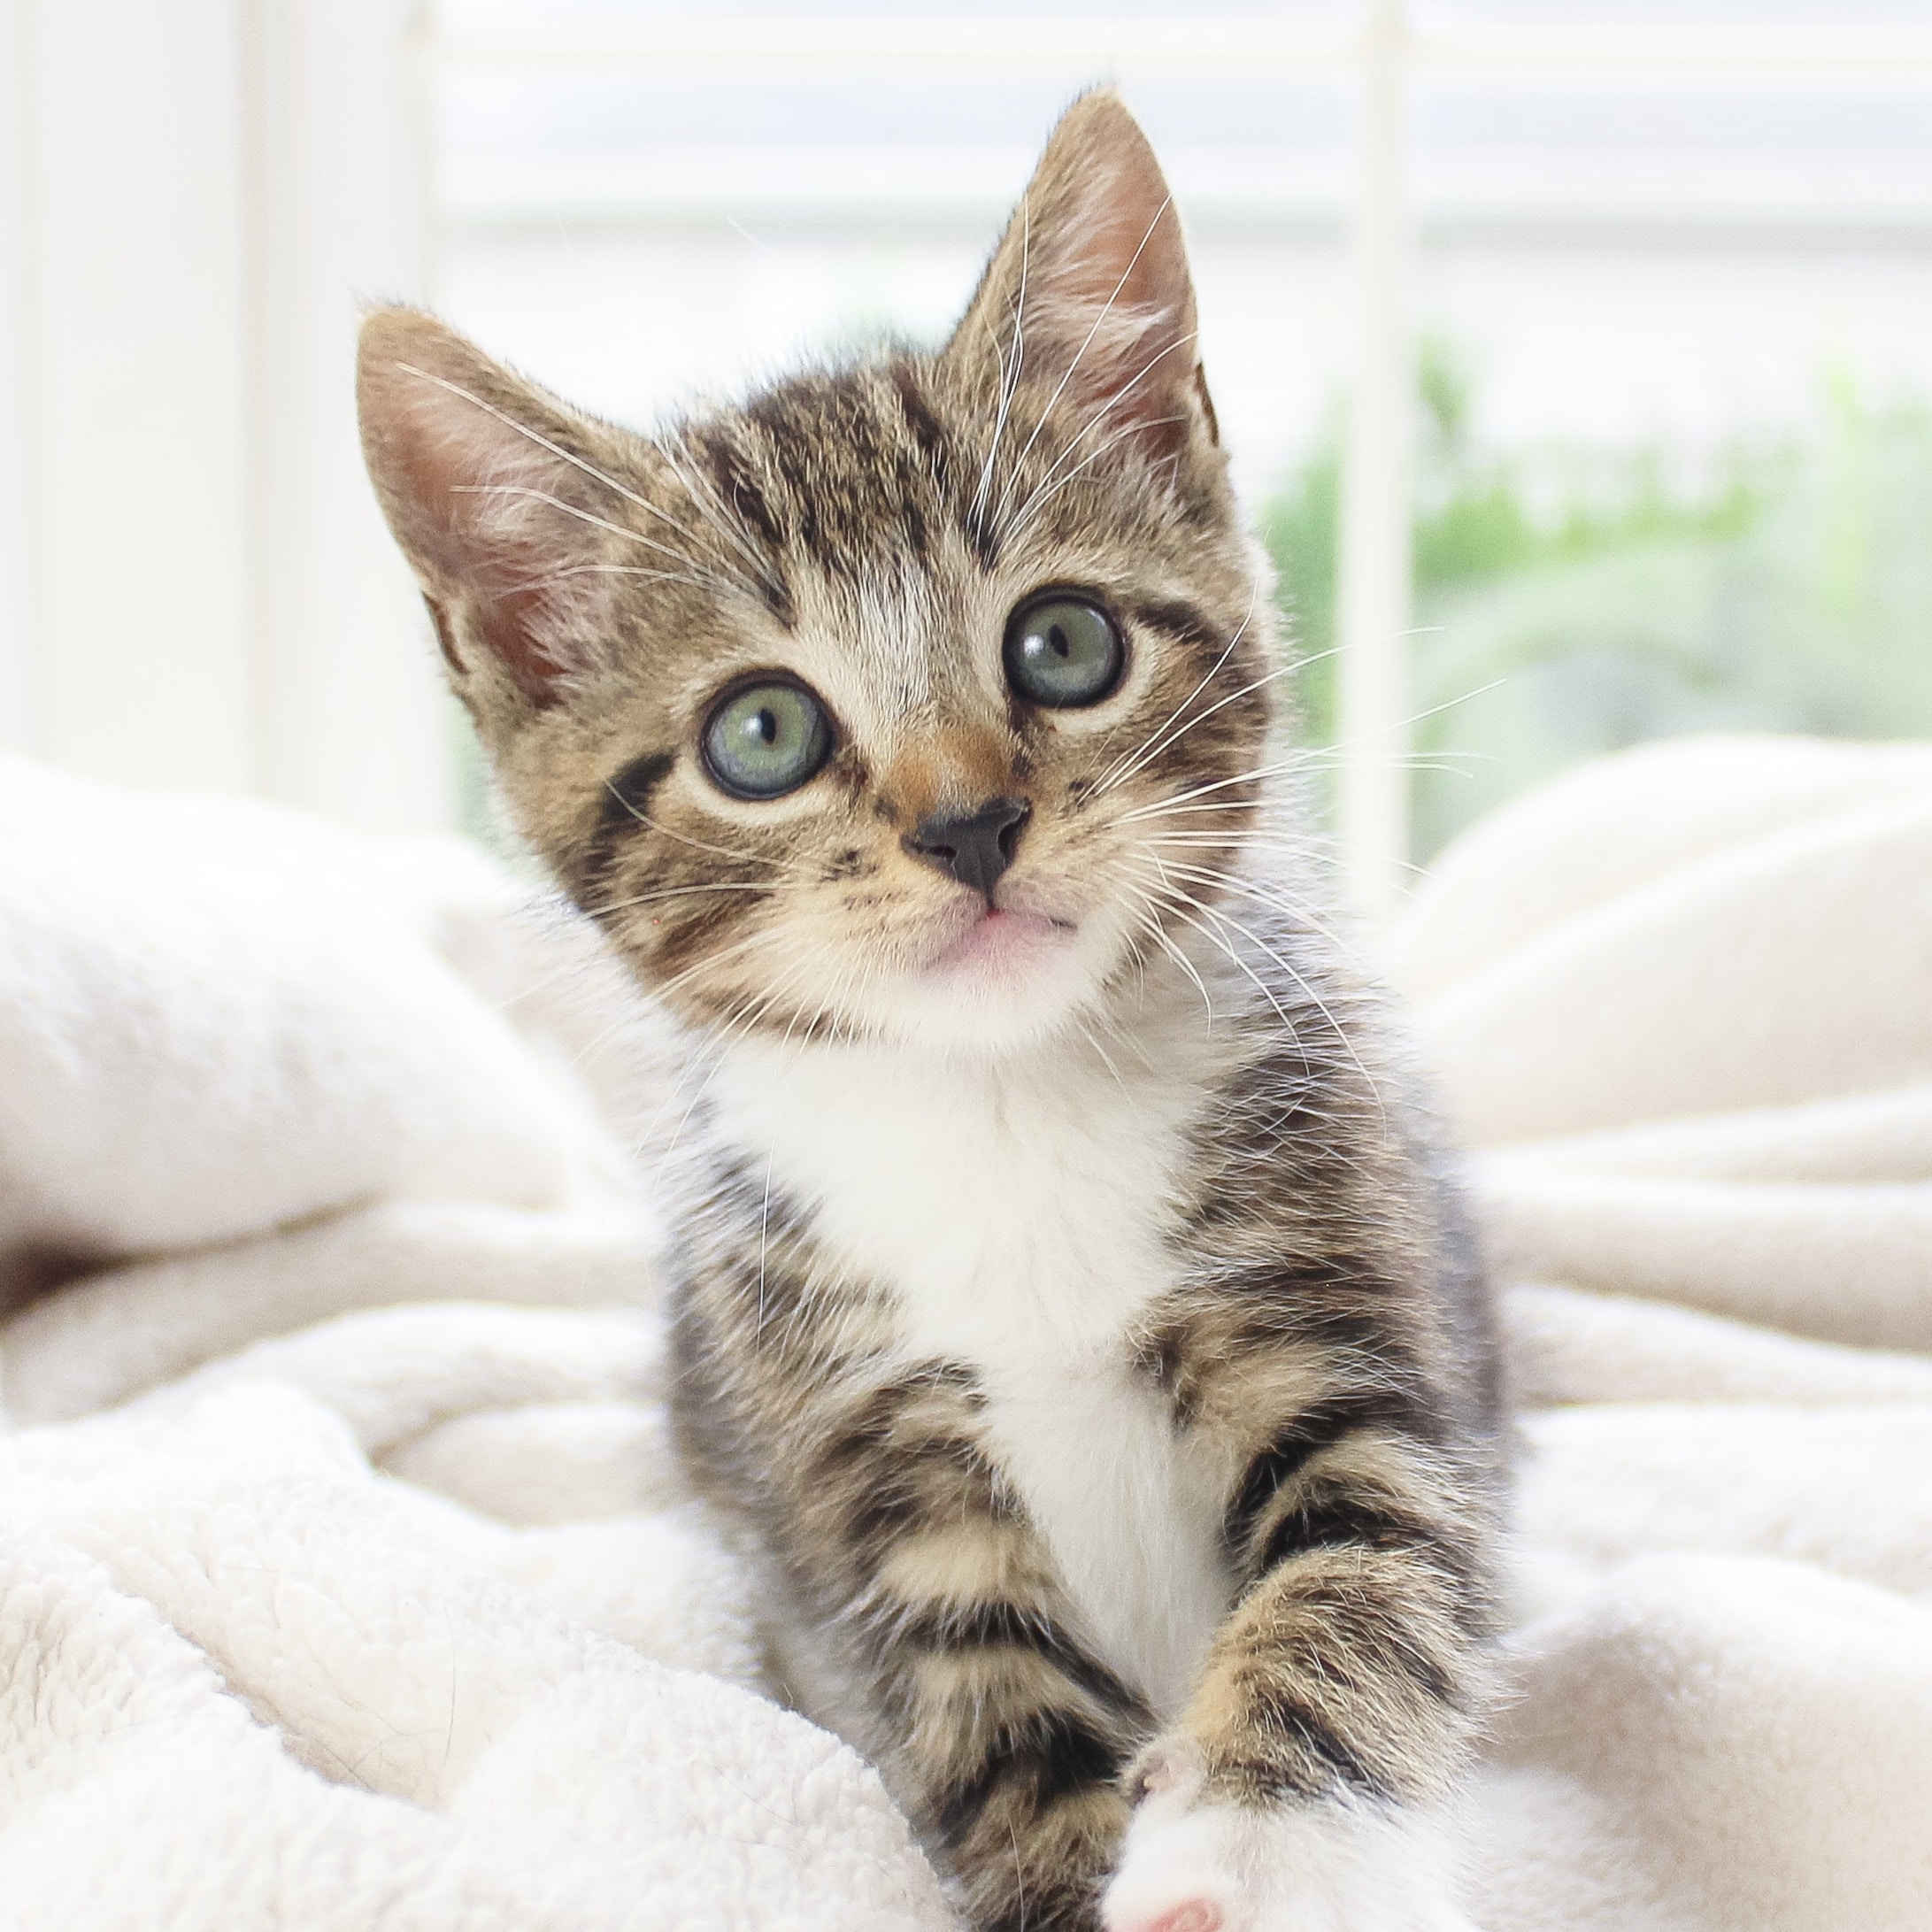 image of a cute kitten